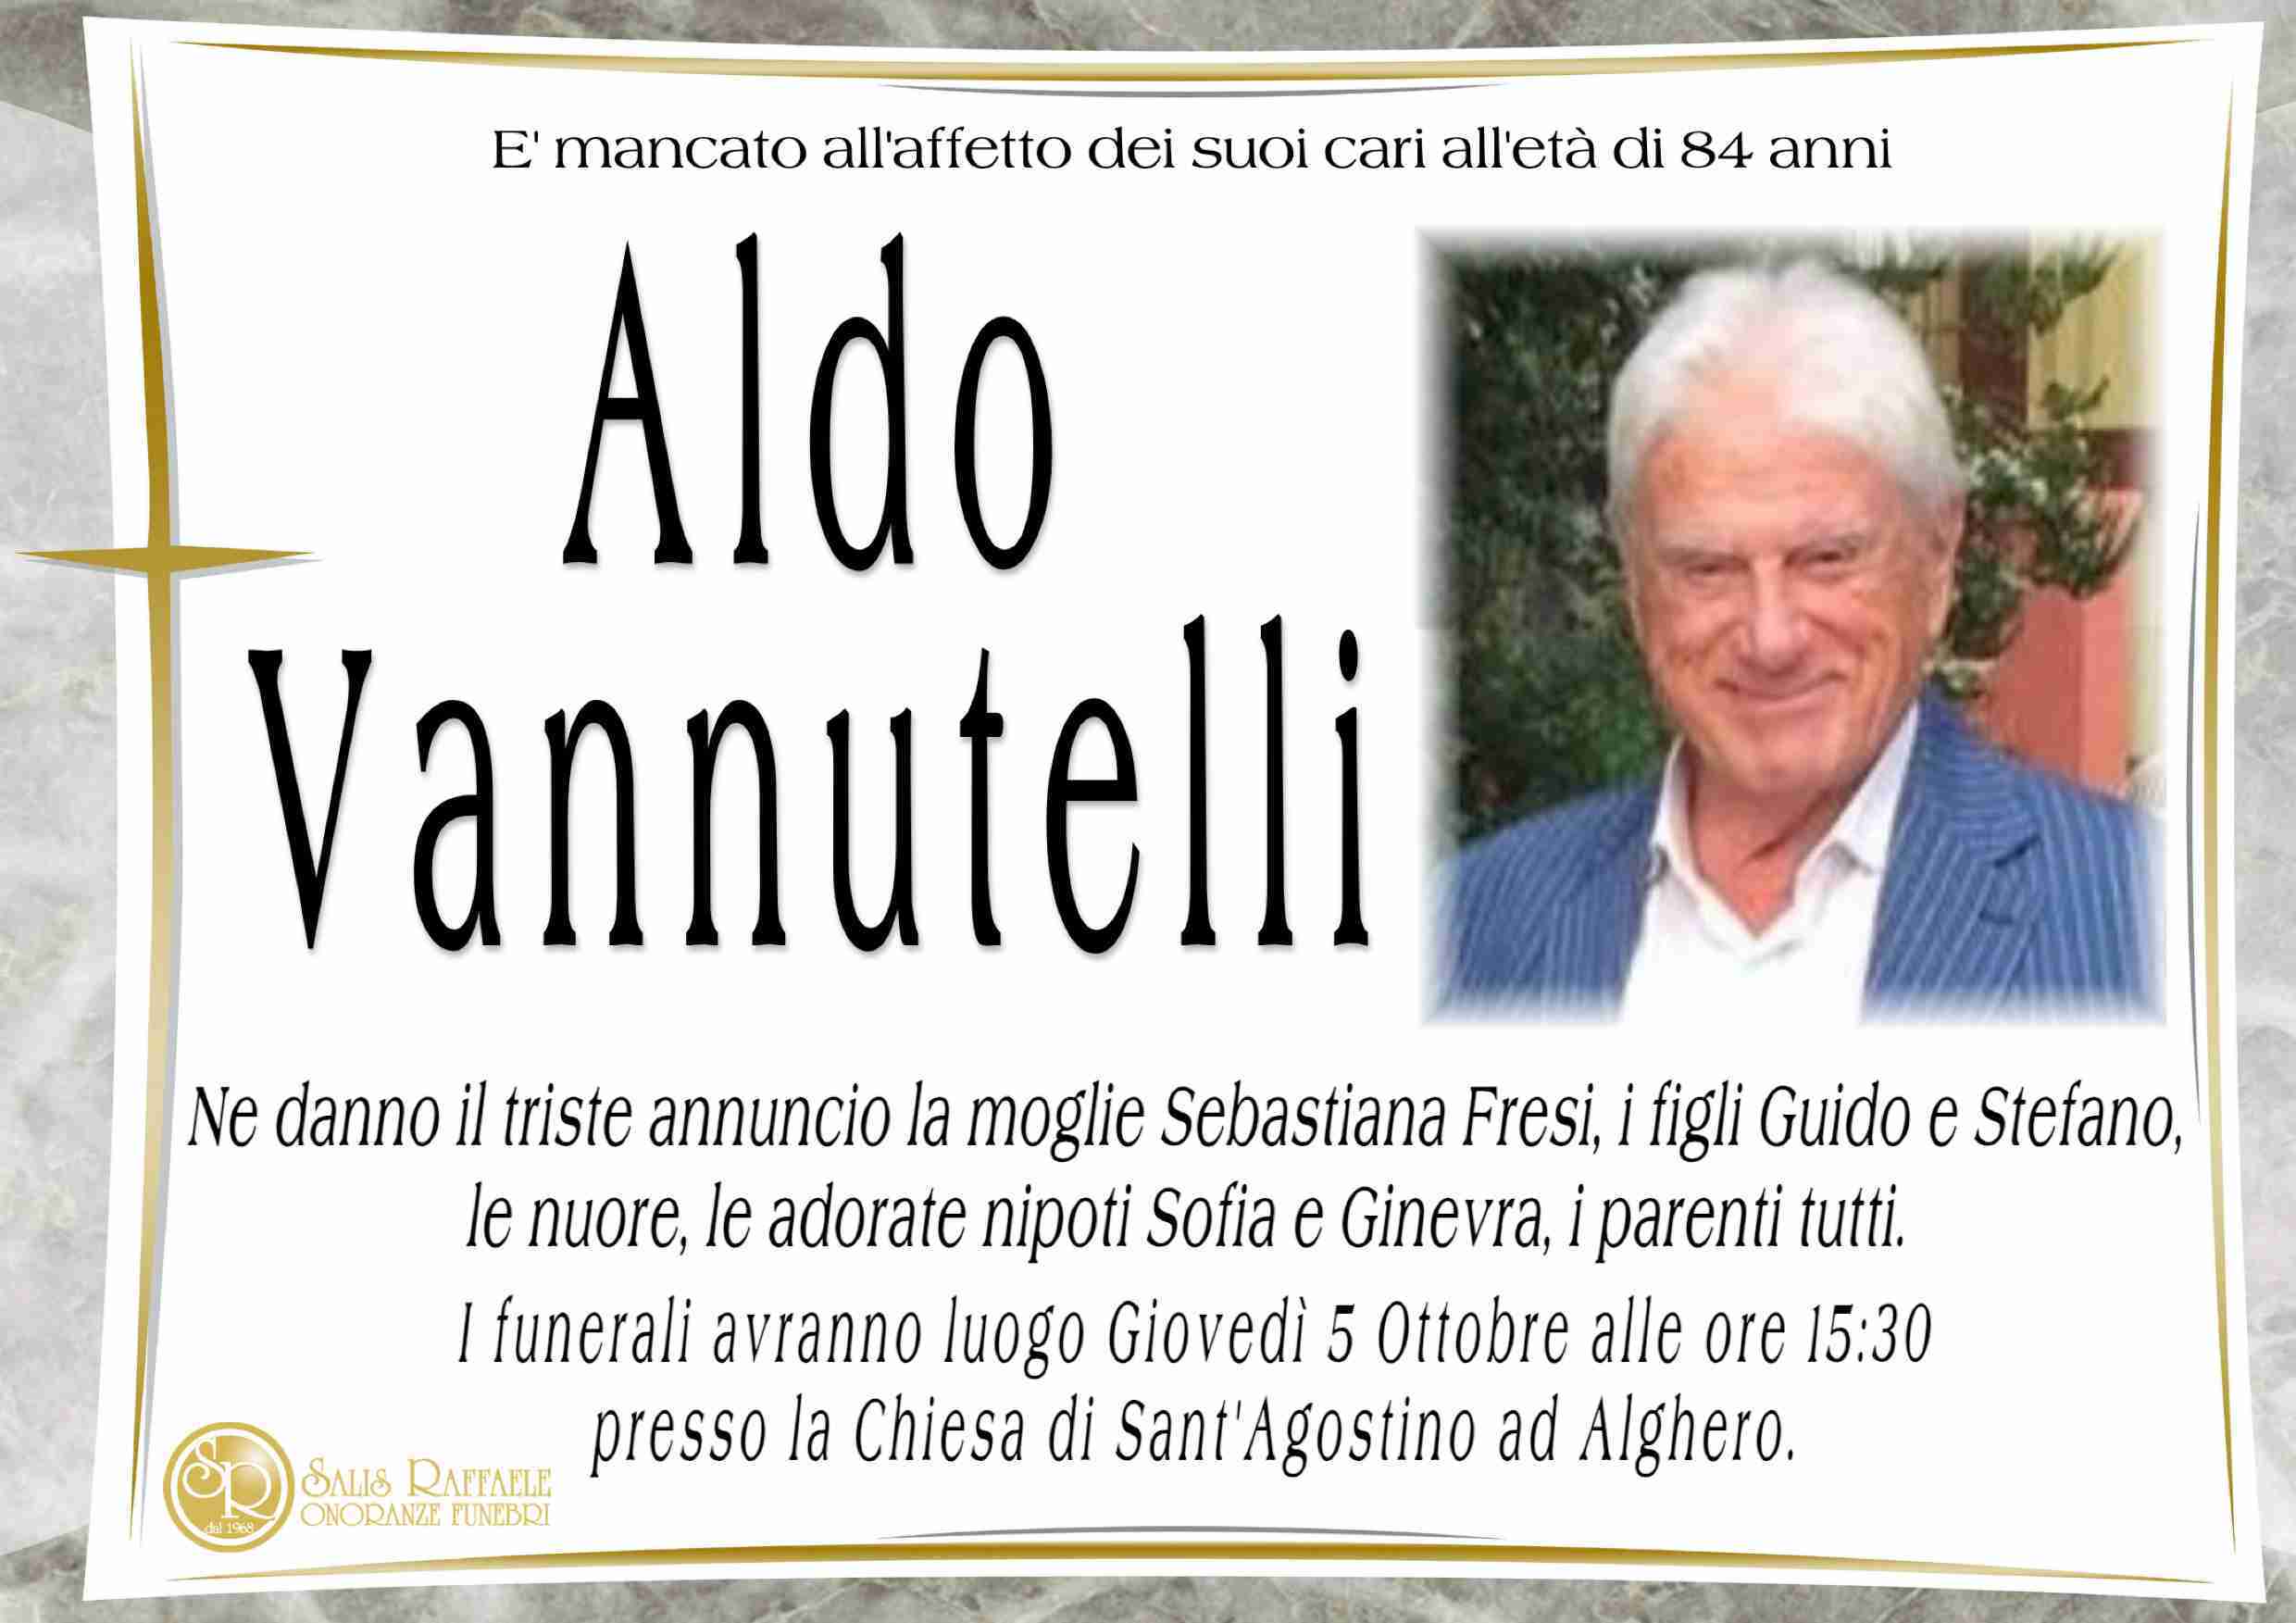 Aldo Vannutelli